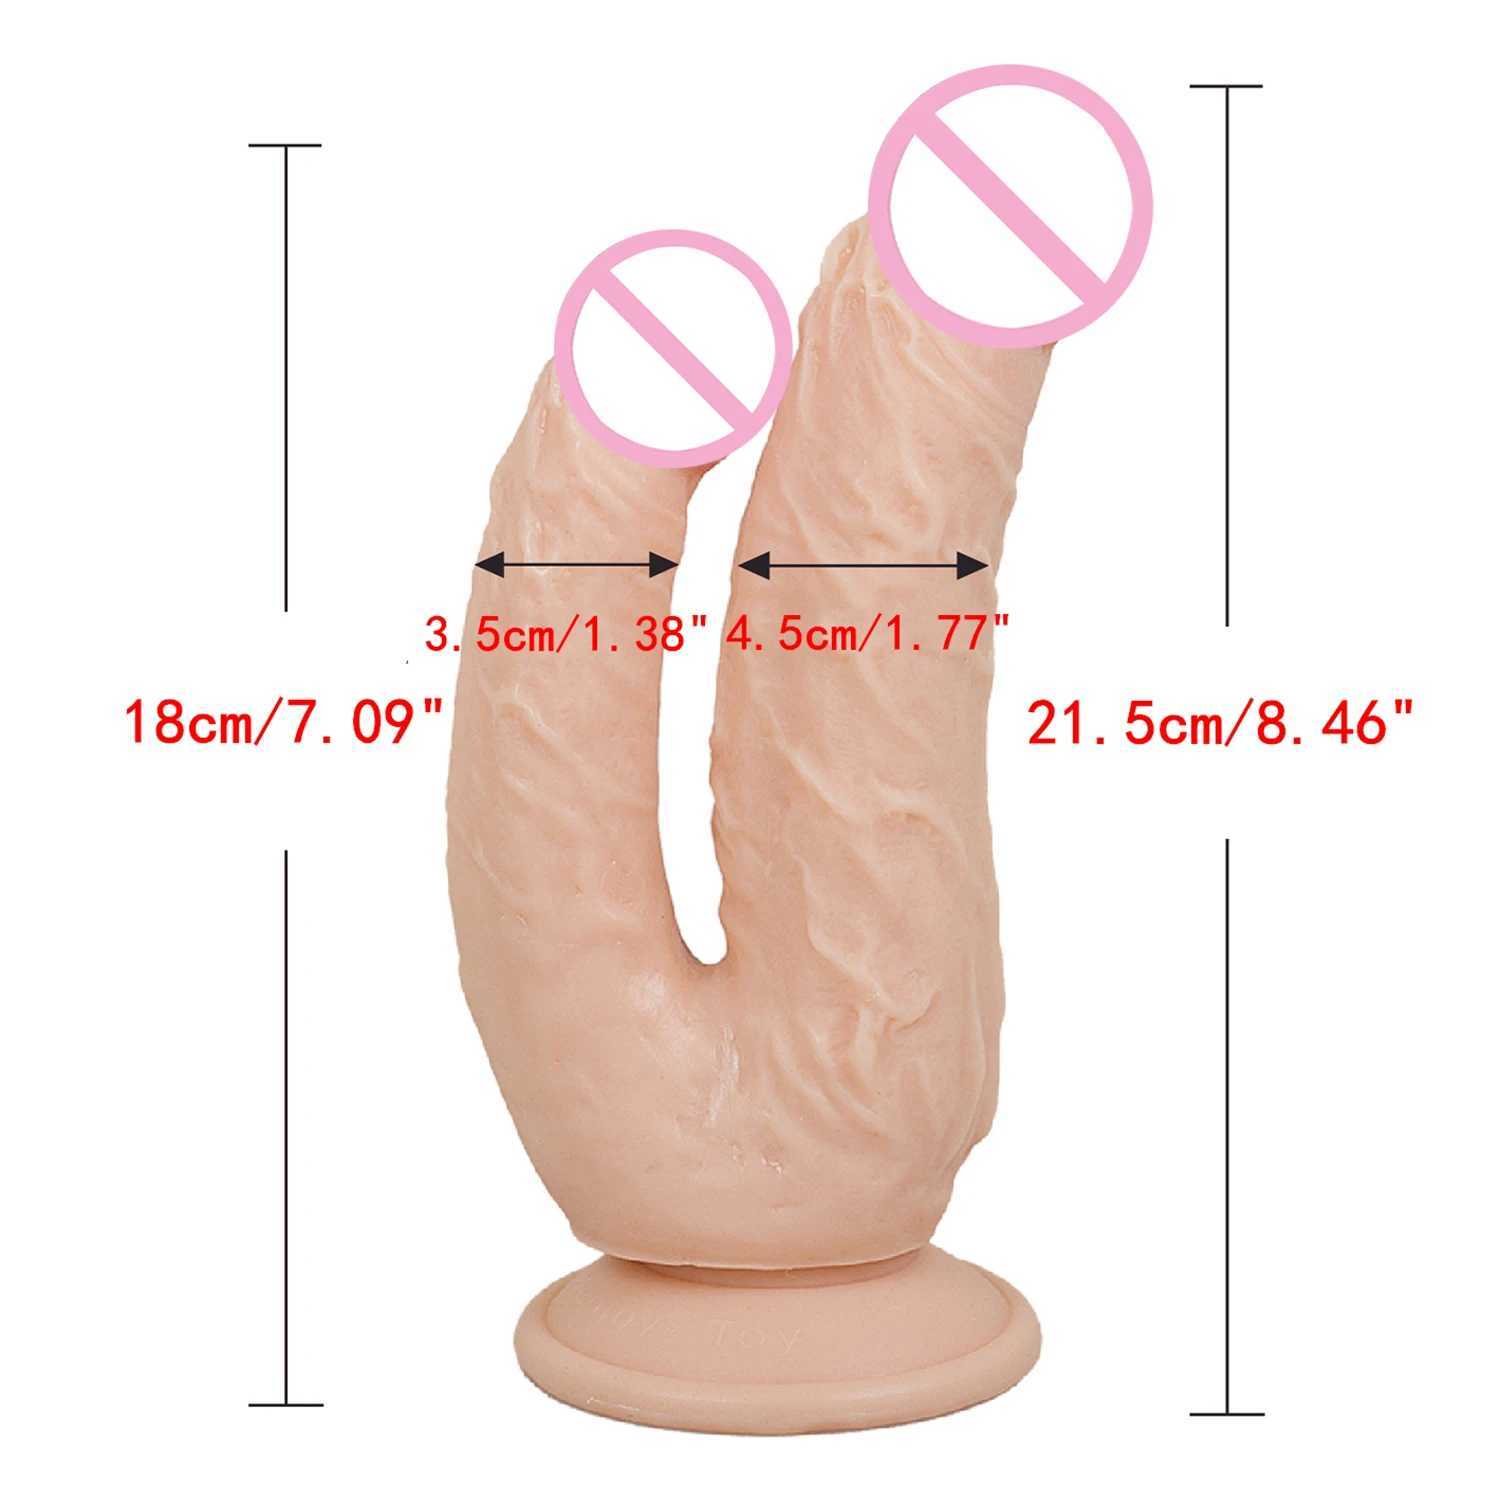 NXY dildos dongs grote dubbele penetratie vagina en anus zachte huid voelen fallus hoofd penis seksspeeltjes voor vrouwen masturbatie 240330